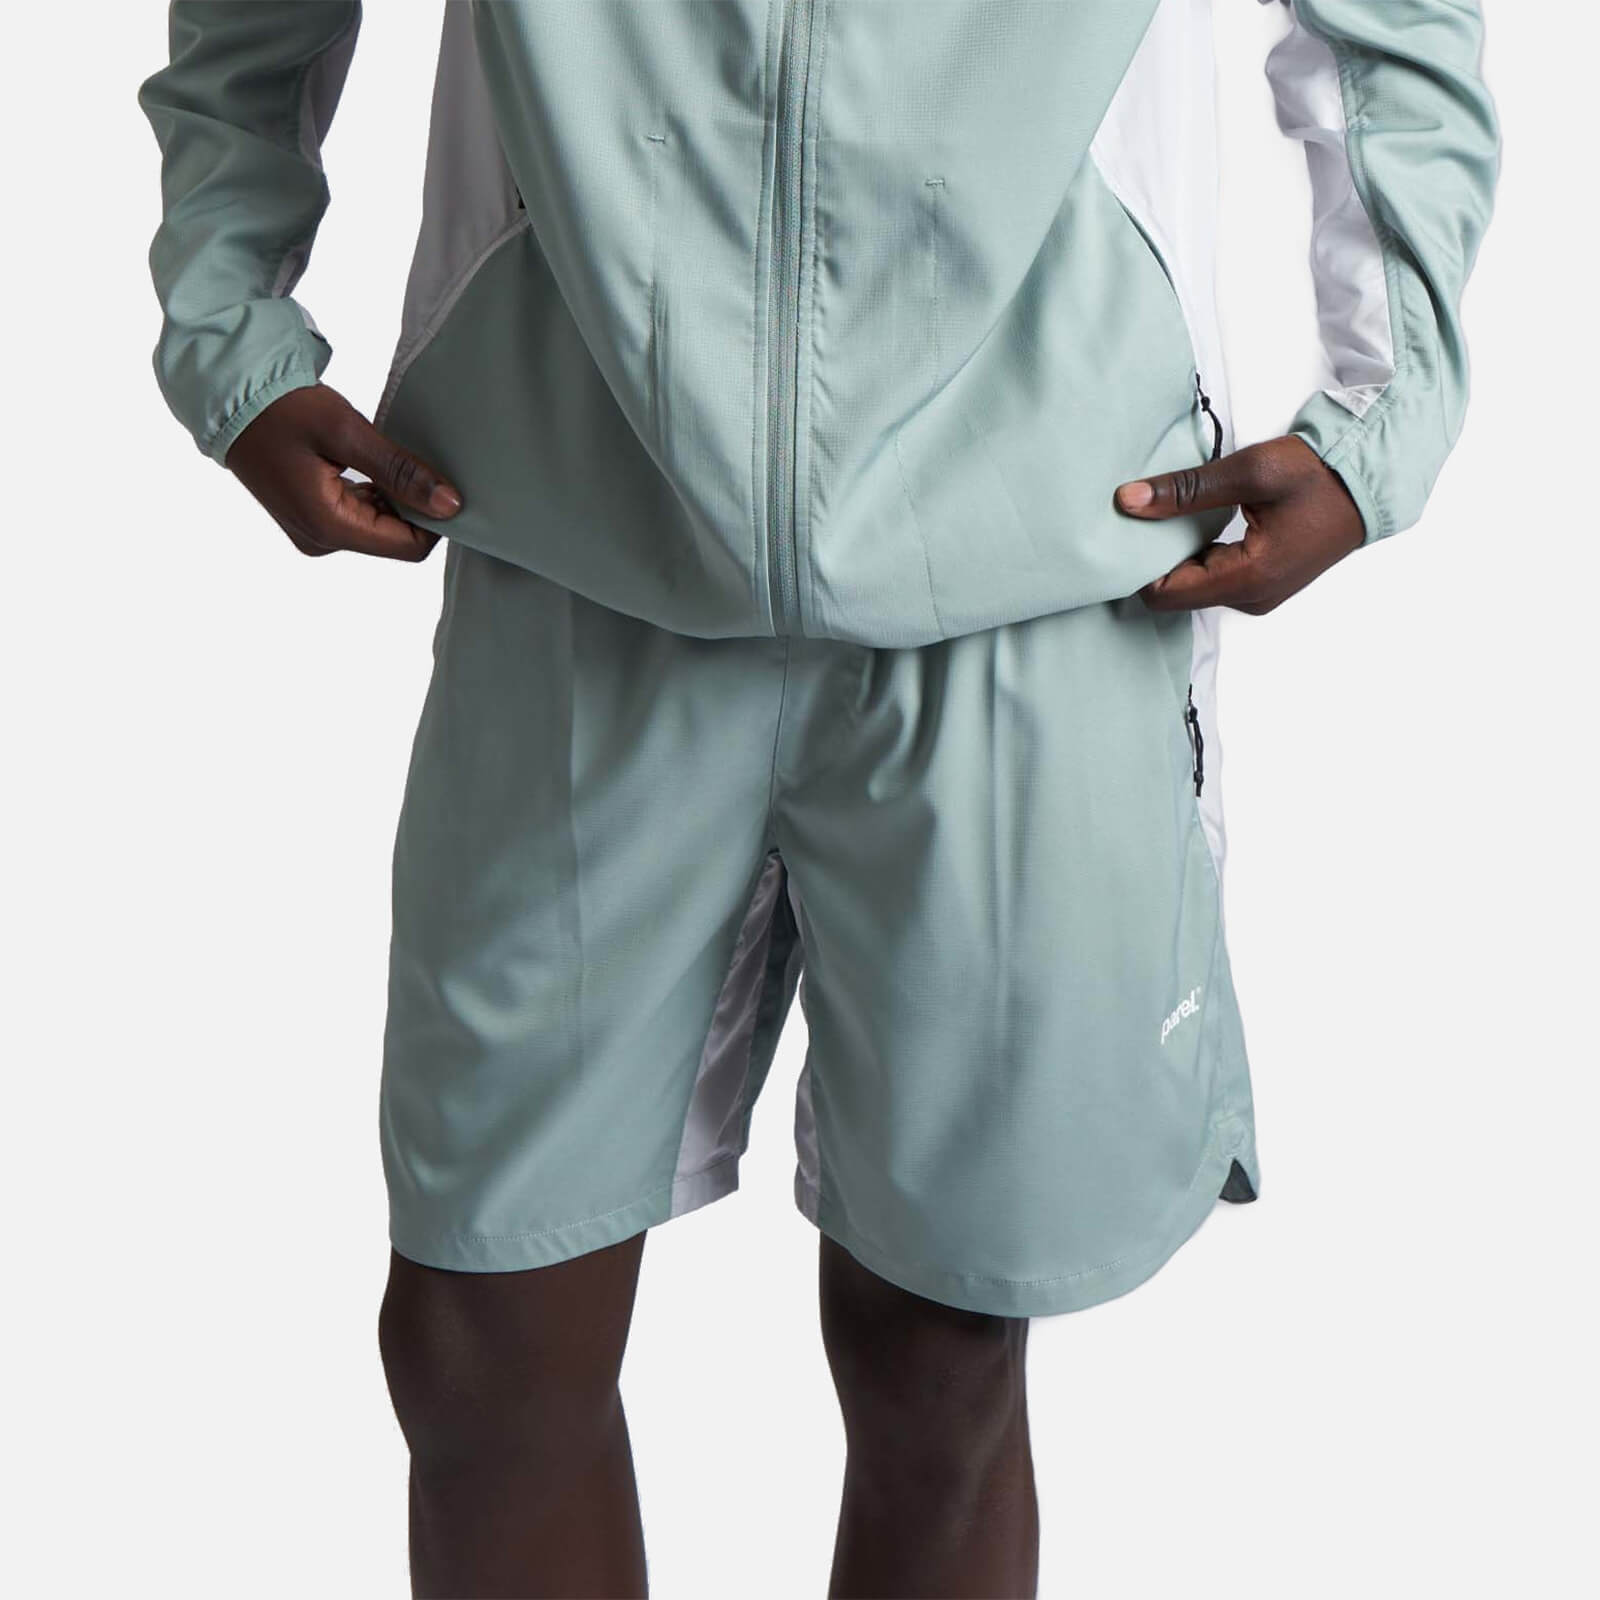 Parel Studios Men's Sport Shorts - Mint/Grey - S